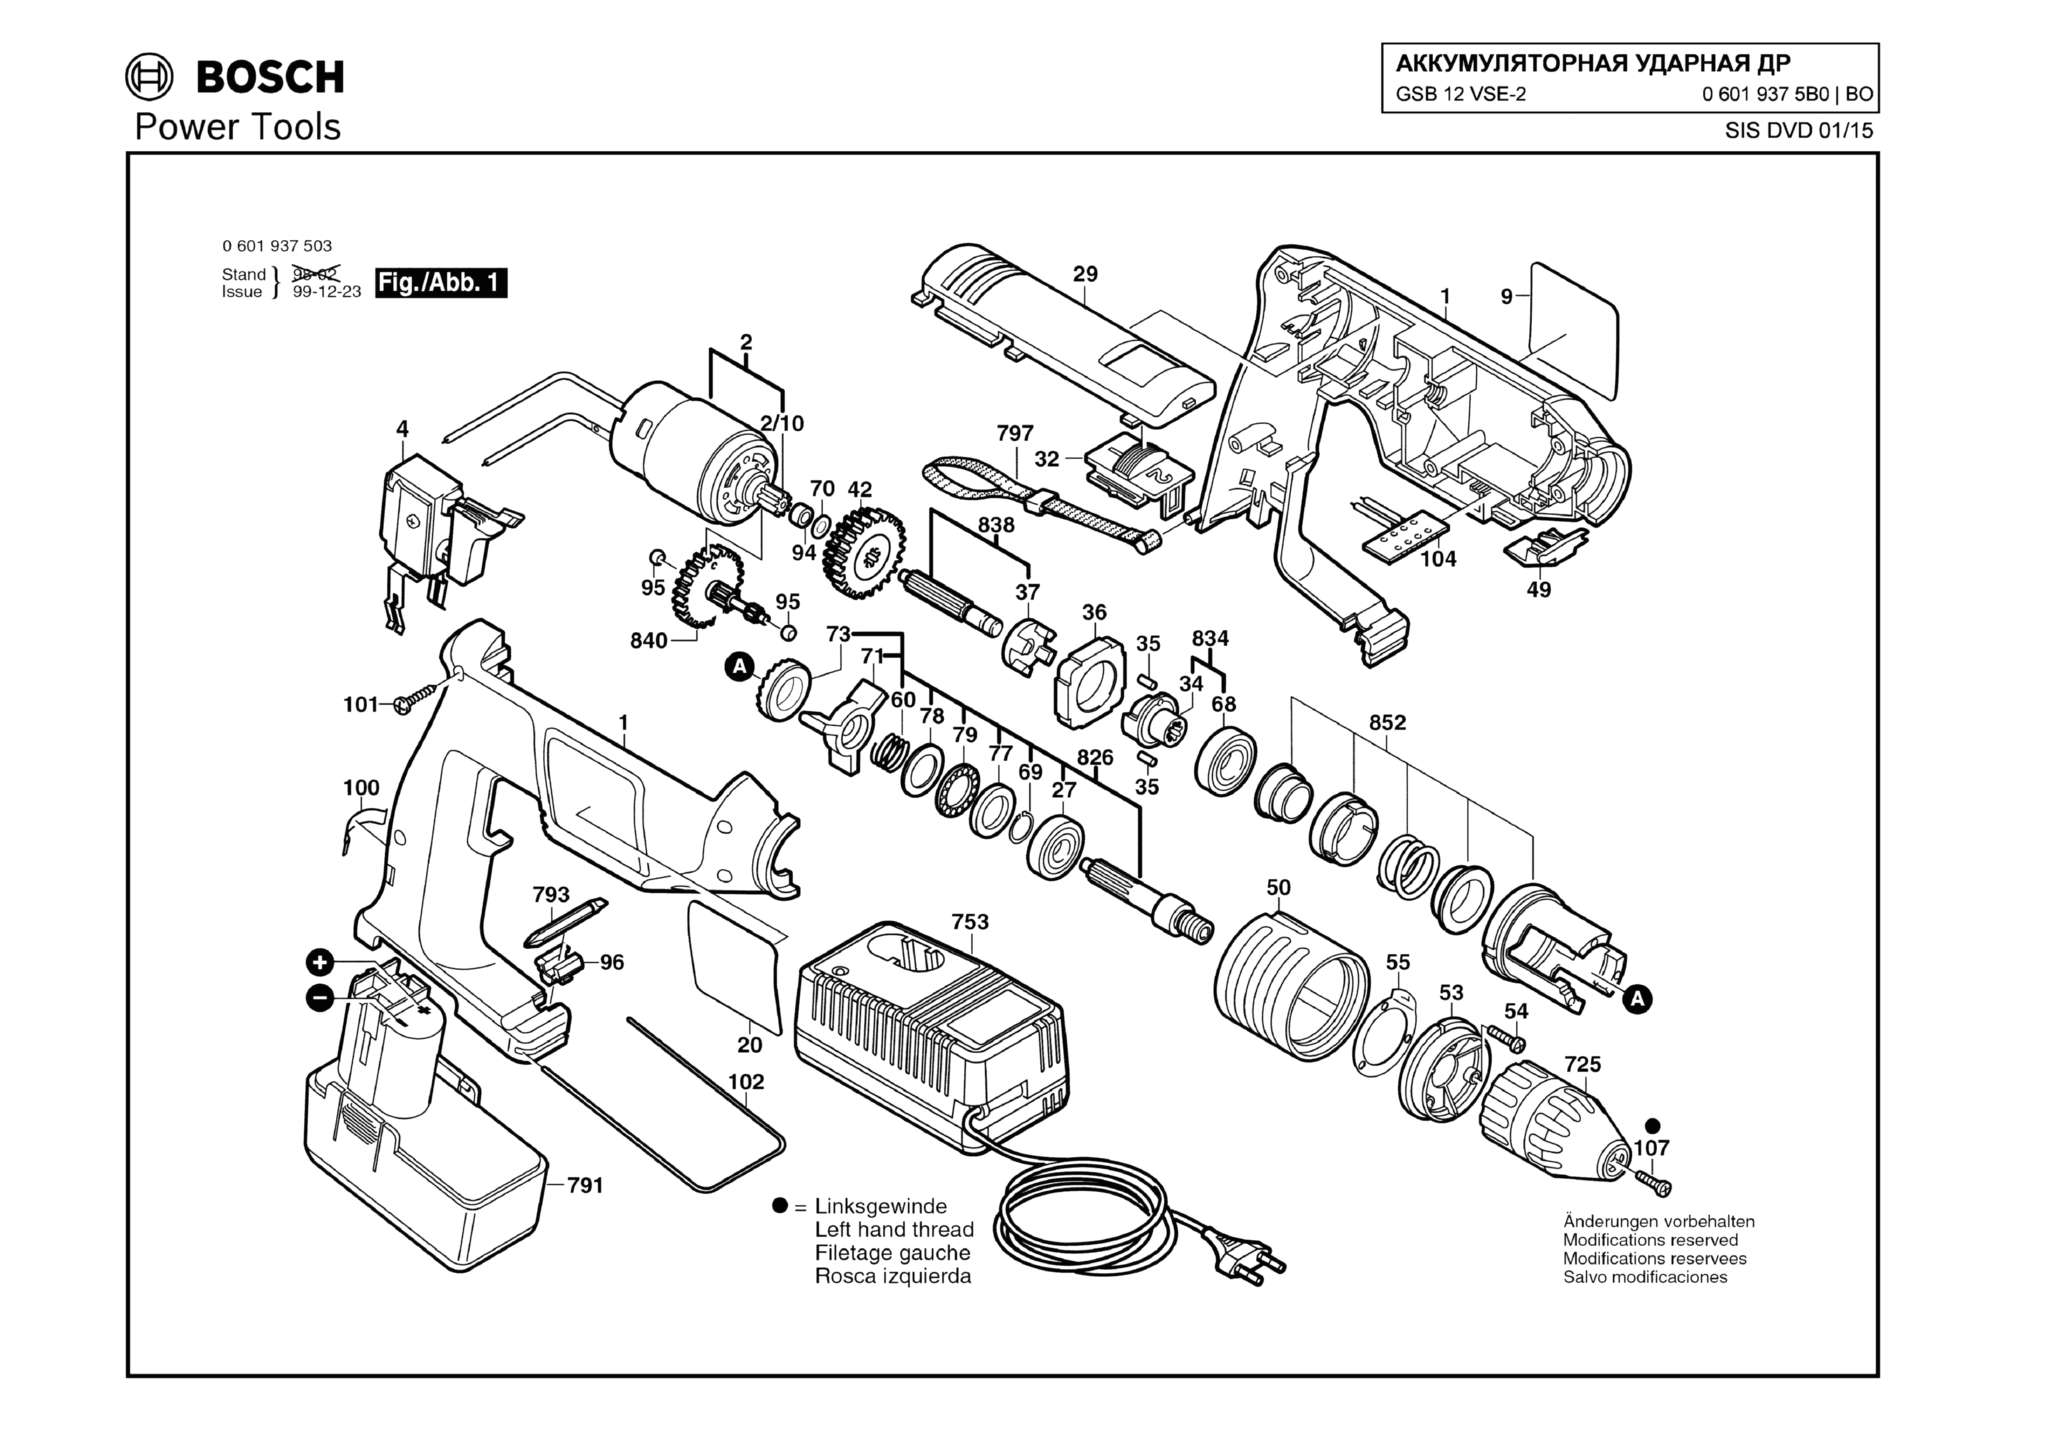 Запчасти, схема и деталировка Bosch GSB 12 VSE-2 (ТИП 06019375BO)